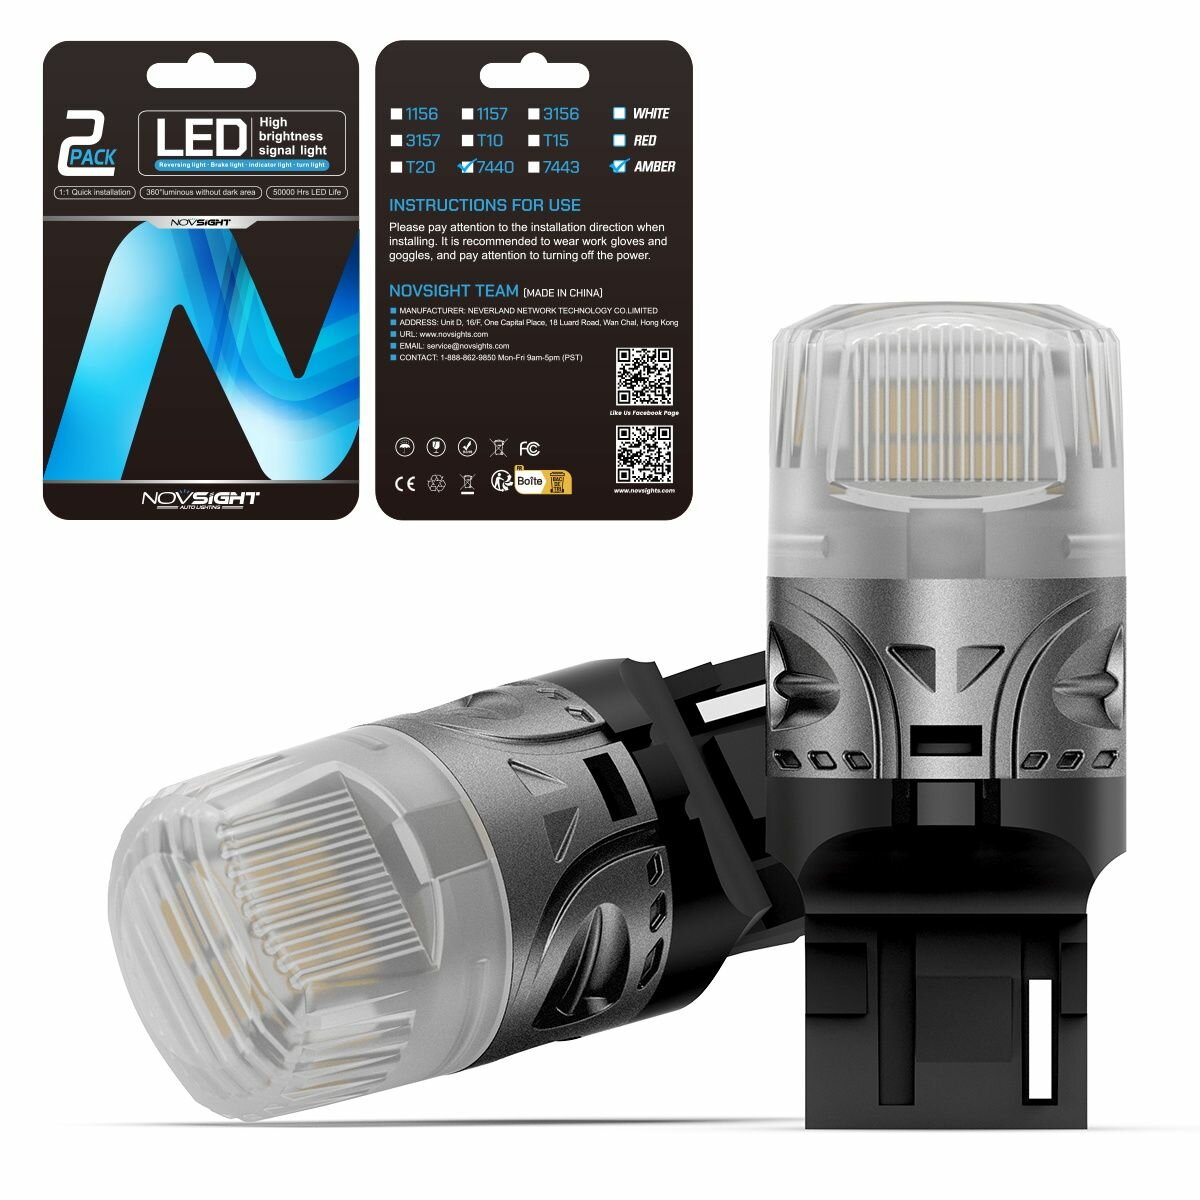 Светодиодная лампа Novsight SL9 цоколь T20 7440 W21W одноконтактная желтый свет 2шт LED автомобильная